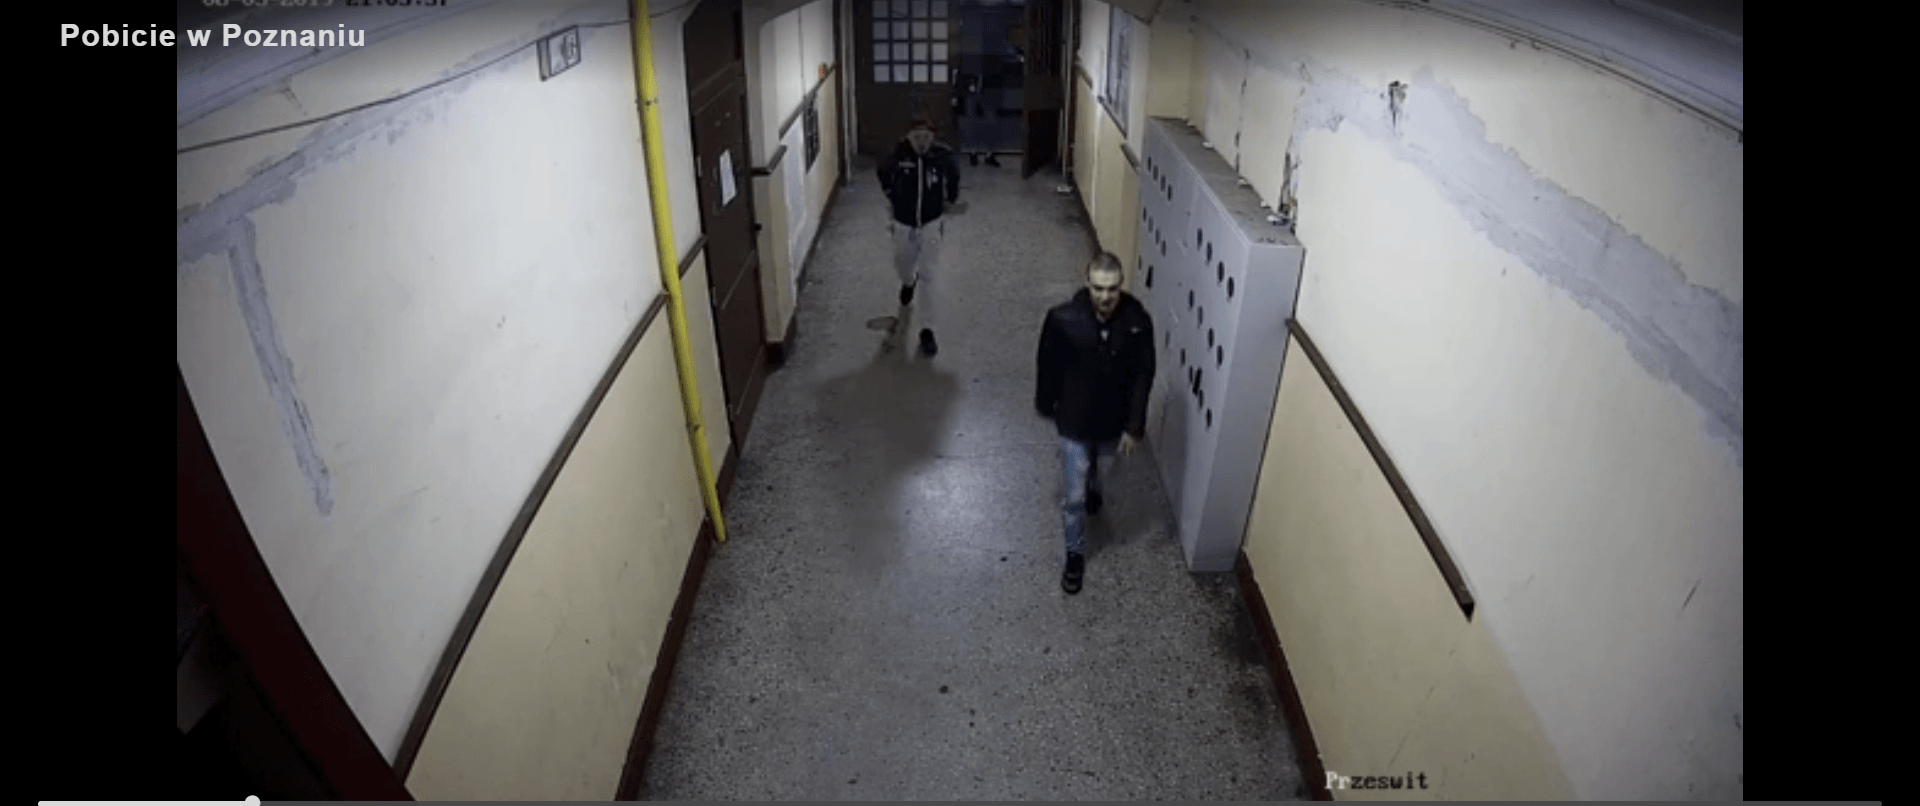 Brutalne pobicie w Poznaniu. Policja publikuje nagranie i wizerunki sprawców